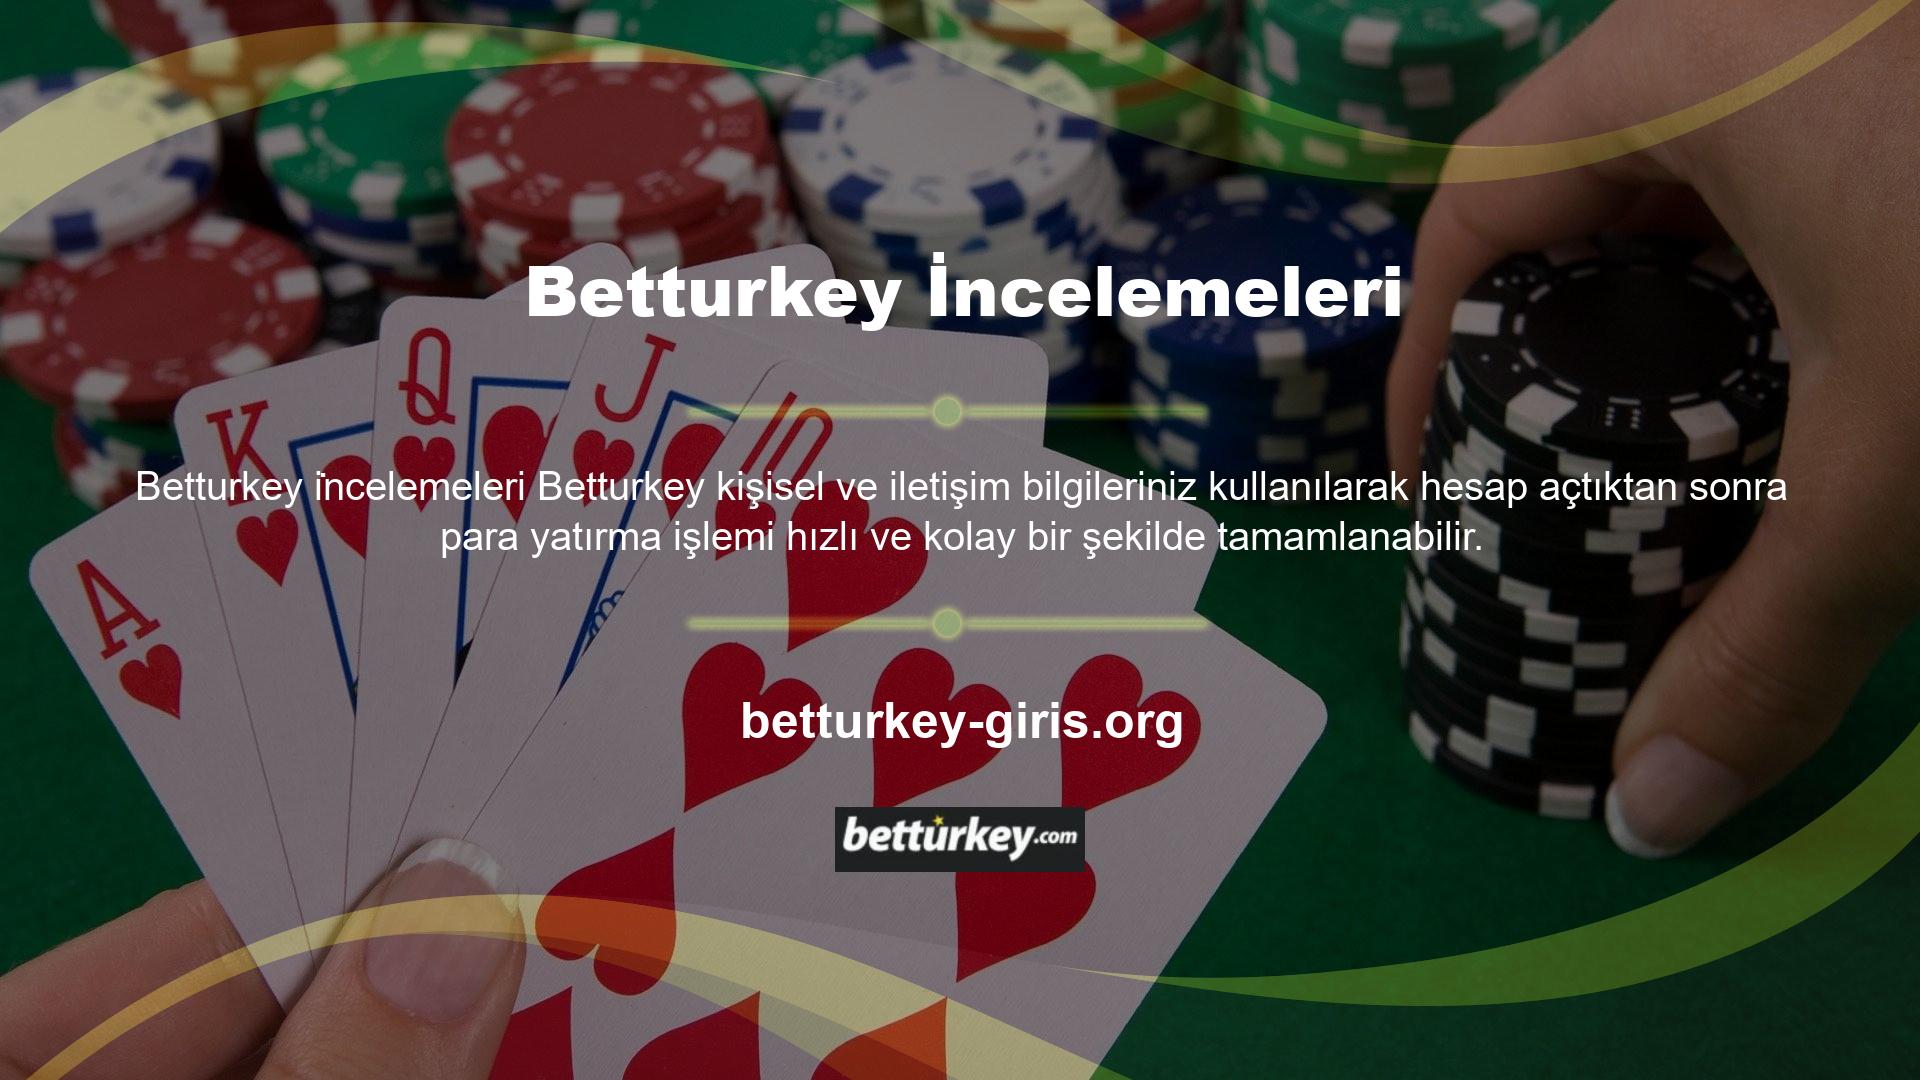 Canlı spor bahisleri ve casino oyunları alanında faaliyet gösteren Betturkey bahis sitesi, fark yaratmayı ve fark yaratmayı başarmış bahis sitelerinden biridir